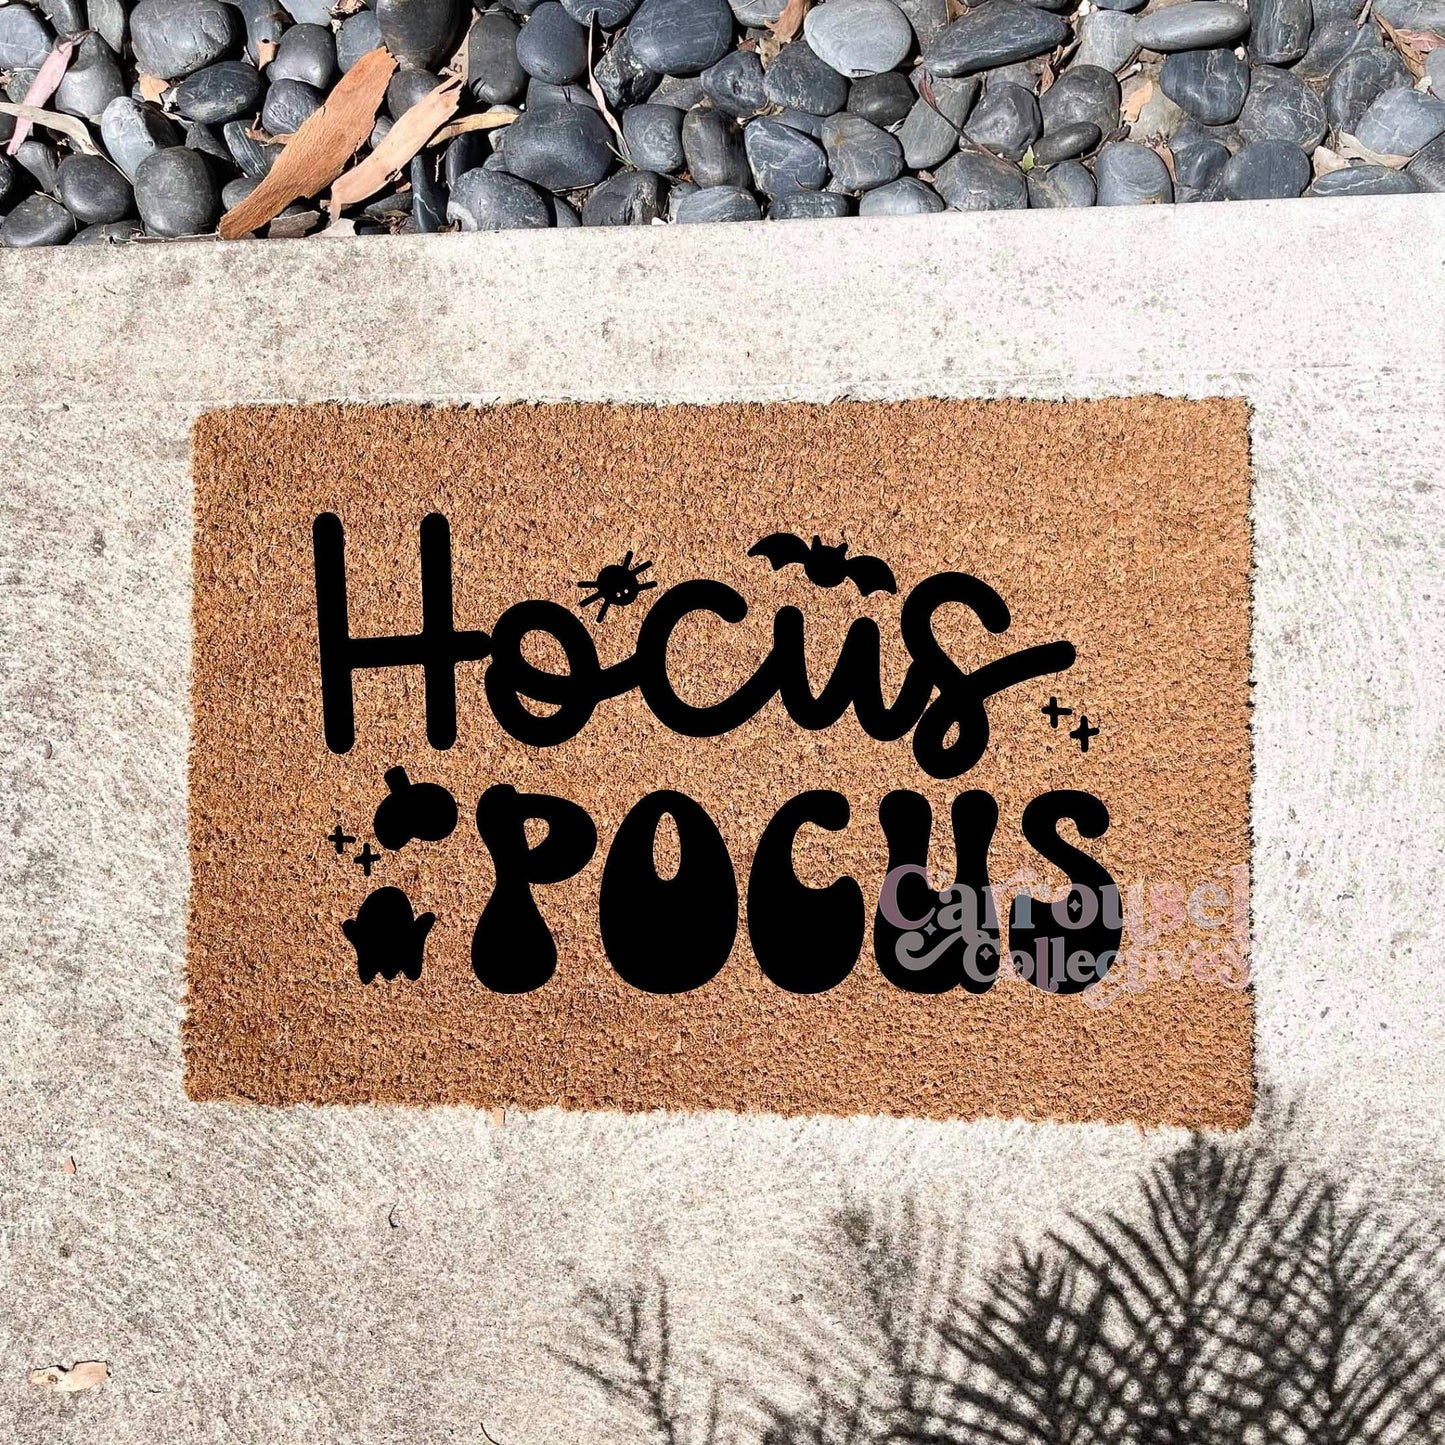 Hocus Pocus doormat, Halloween Doormat, Spooky Doormat, Creepy Doormat